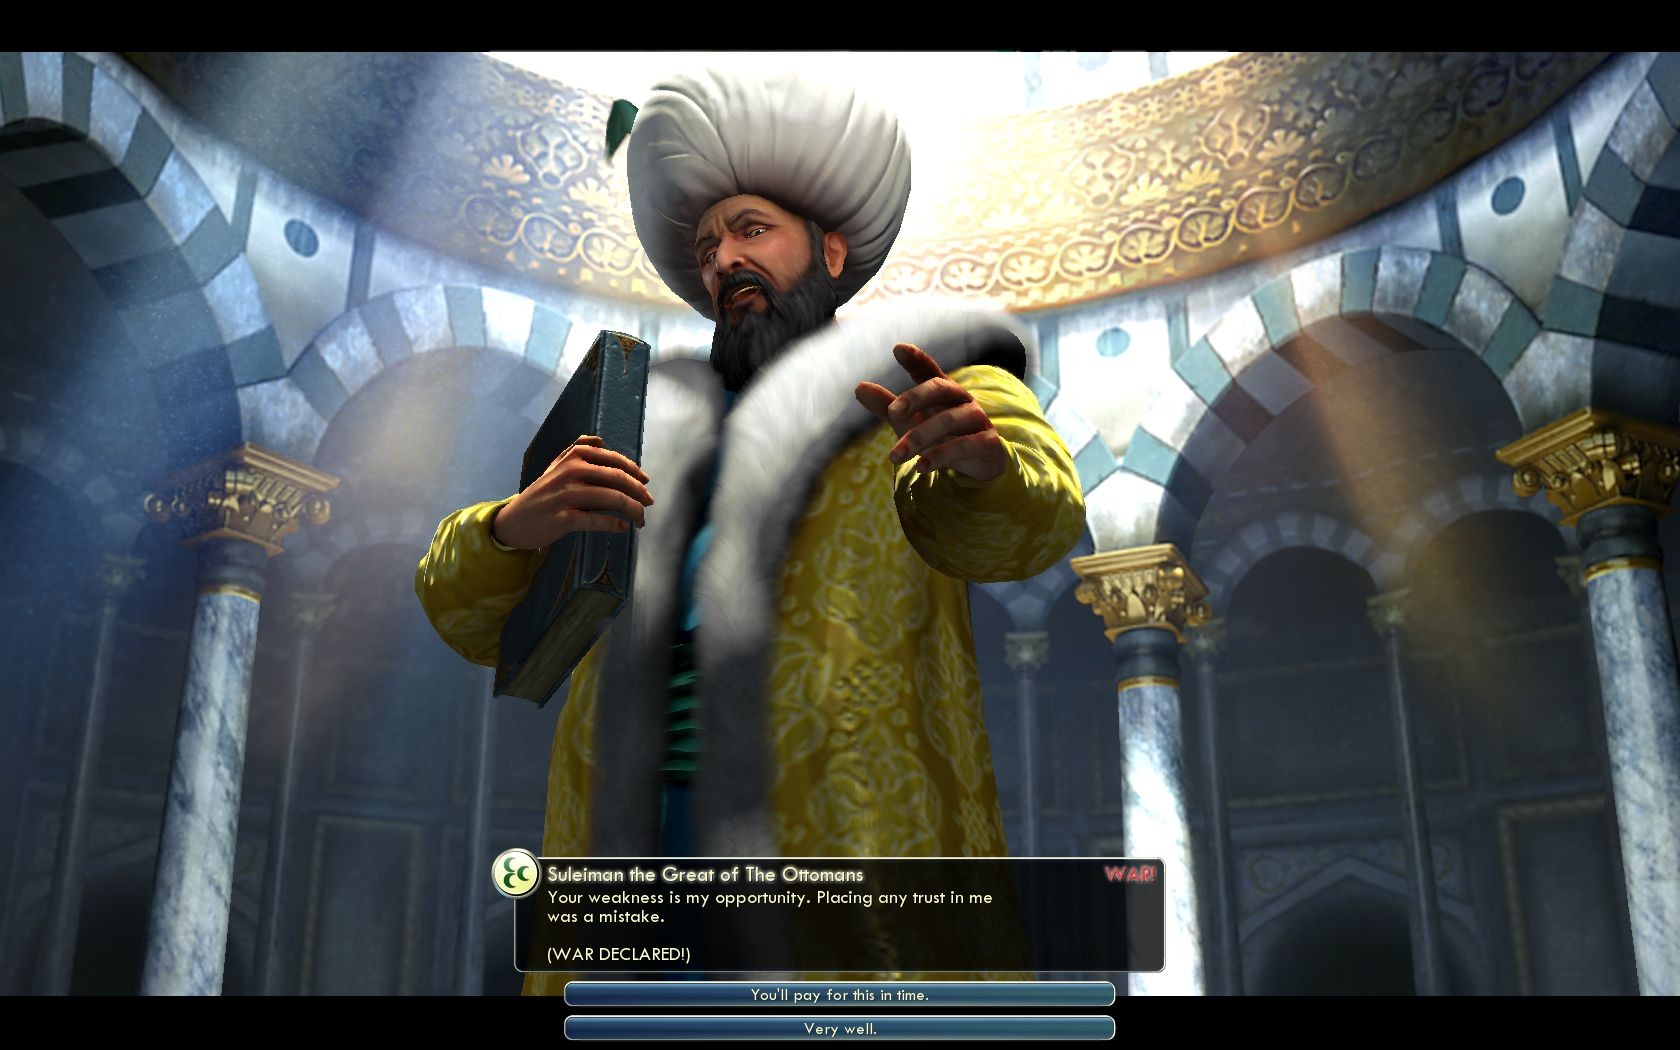 Suleiman Declares War